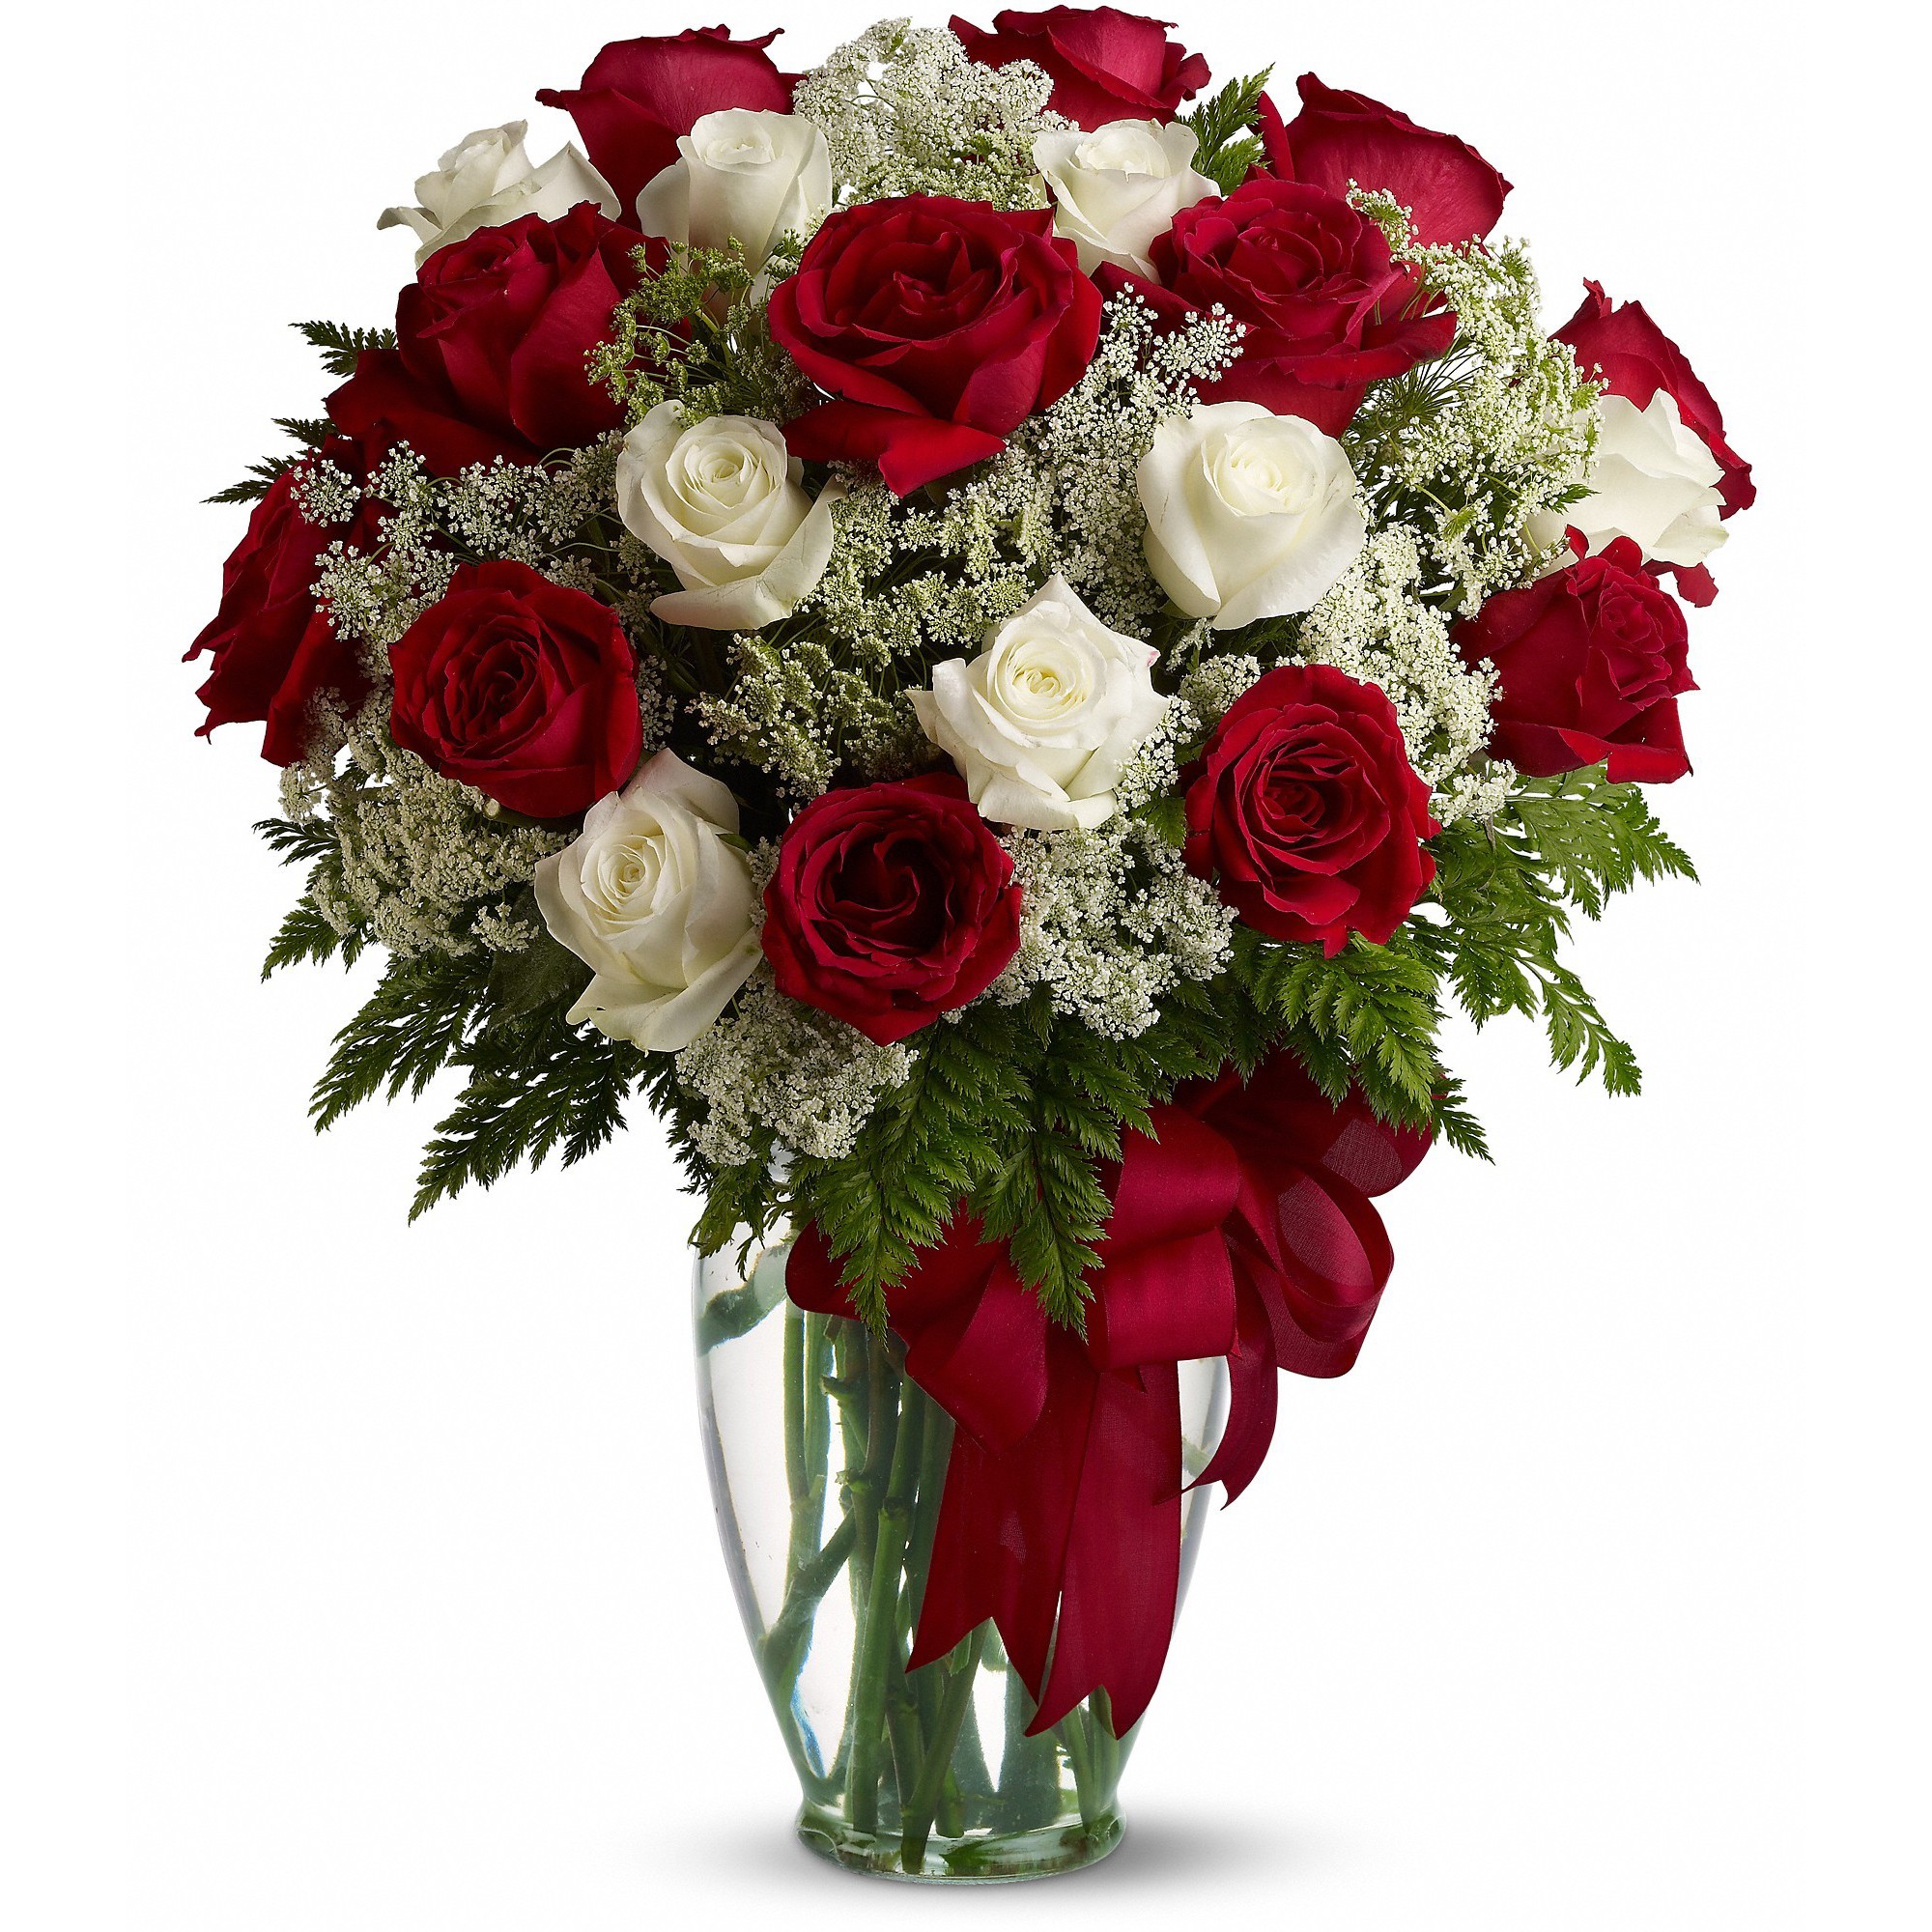 Mãn nhãn với bộ sưu tập cách cắm hoa hồng đẹp tinh tế hình 25